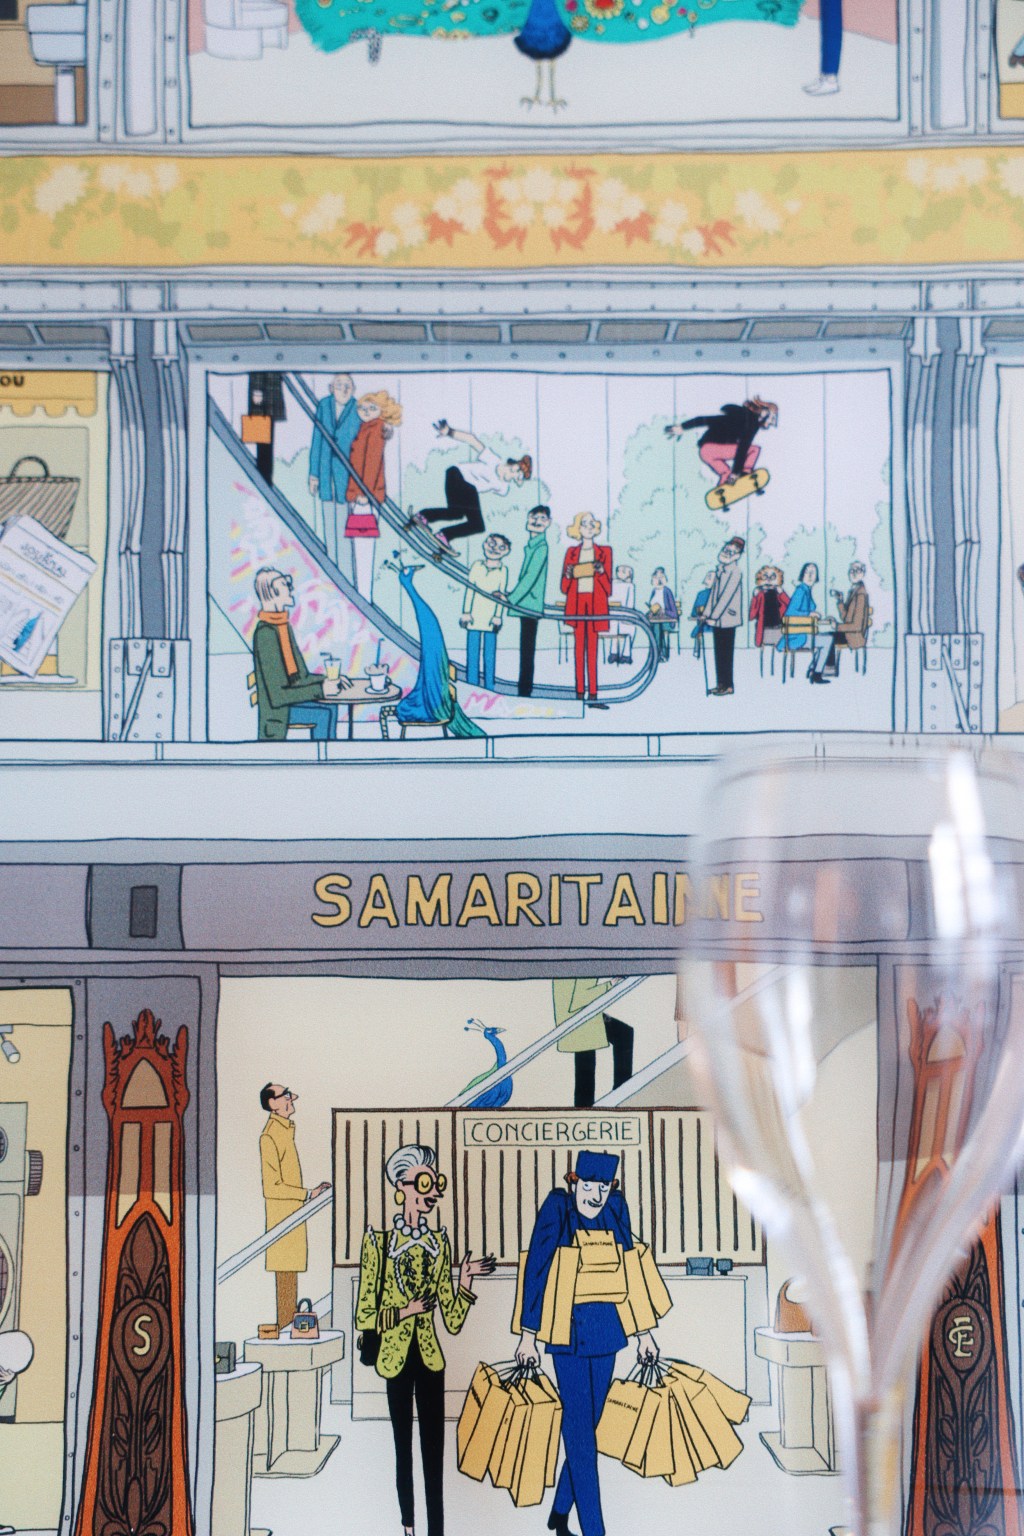 Hotel S/O Paris e loja Samaritaine fazem colaboração divertida. Na foto, desenho da loja de departamentos atrás de uma taça de vidro.